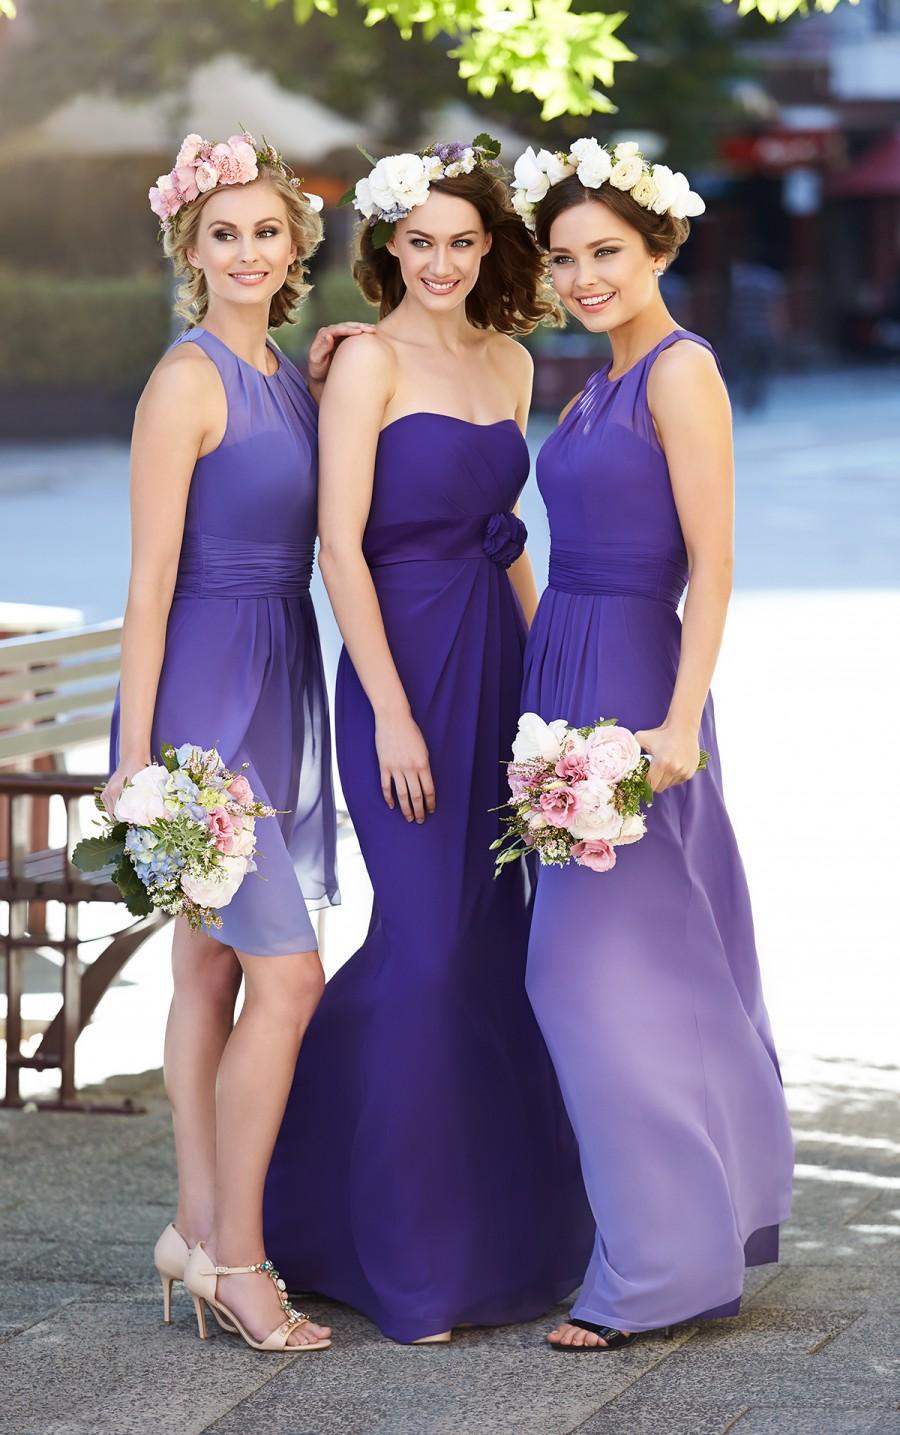 زفاف - Sorella Vita Ombre Bridesmaid Dress Style 8459OM